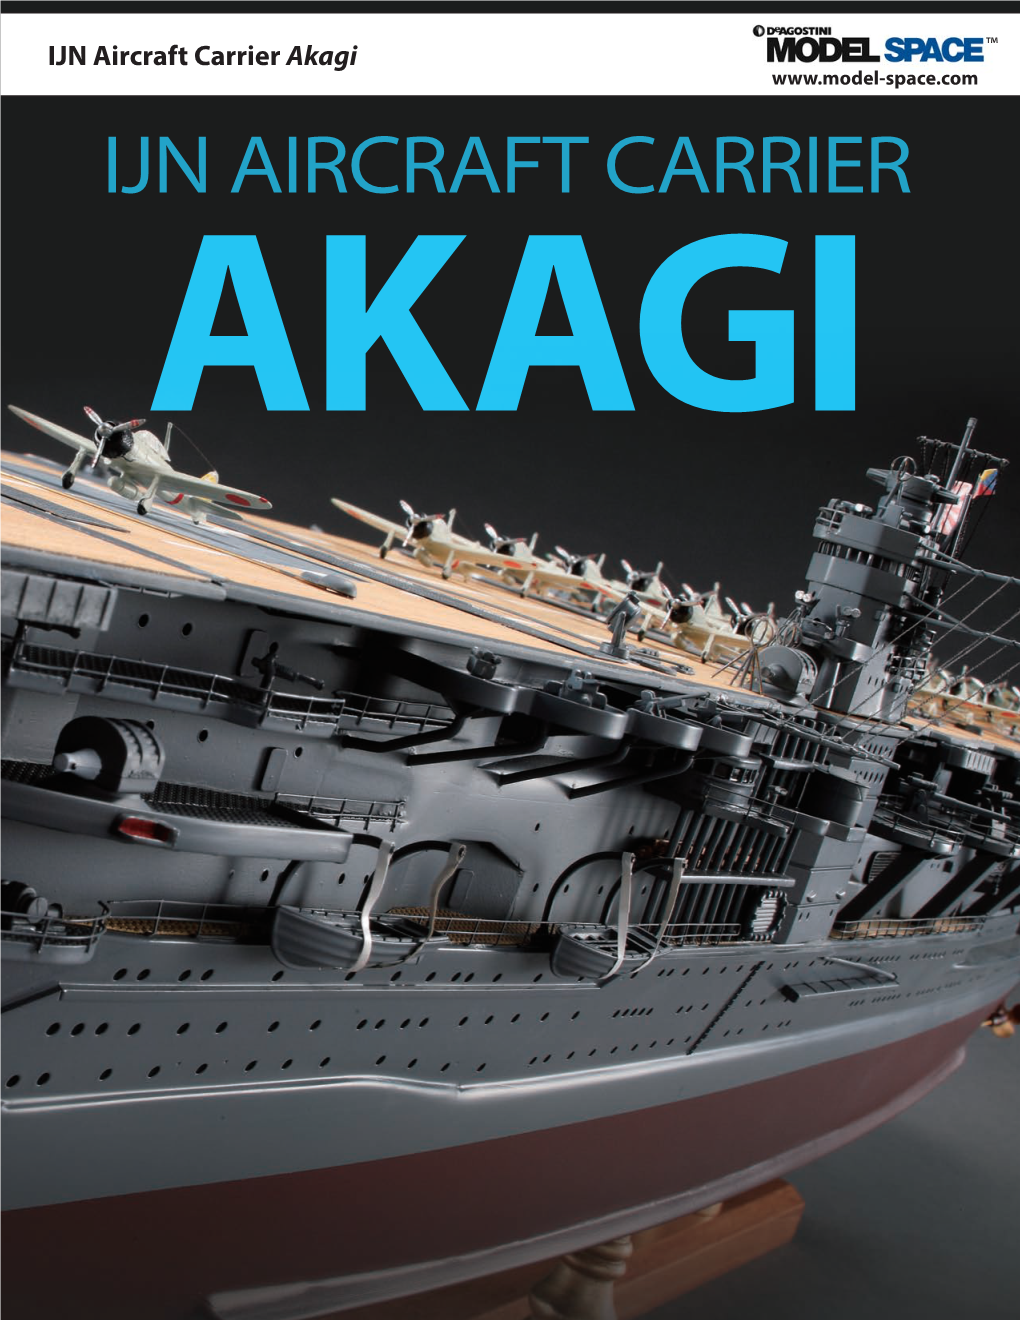 IJN Aircraft Carrier Akagi ™ IJN AIRCRAFT CARRIER AKAGI IJN Aircraft Carrier Akagi